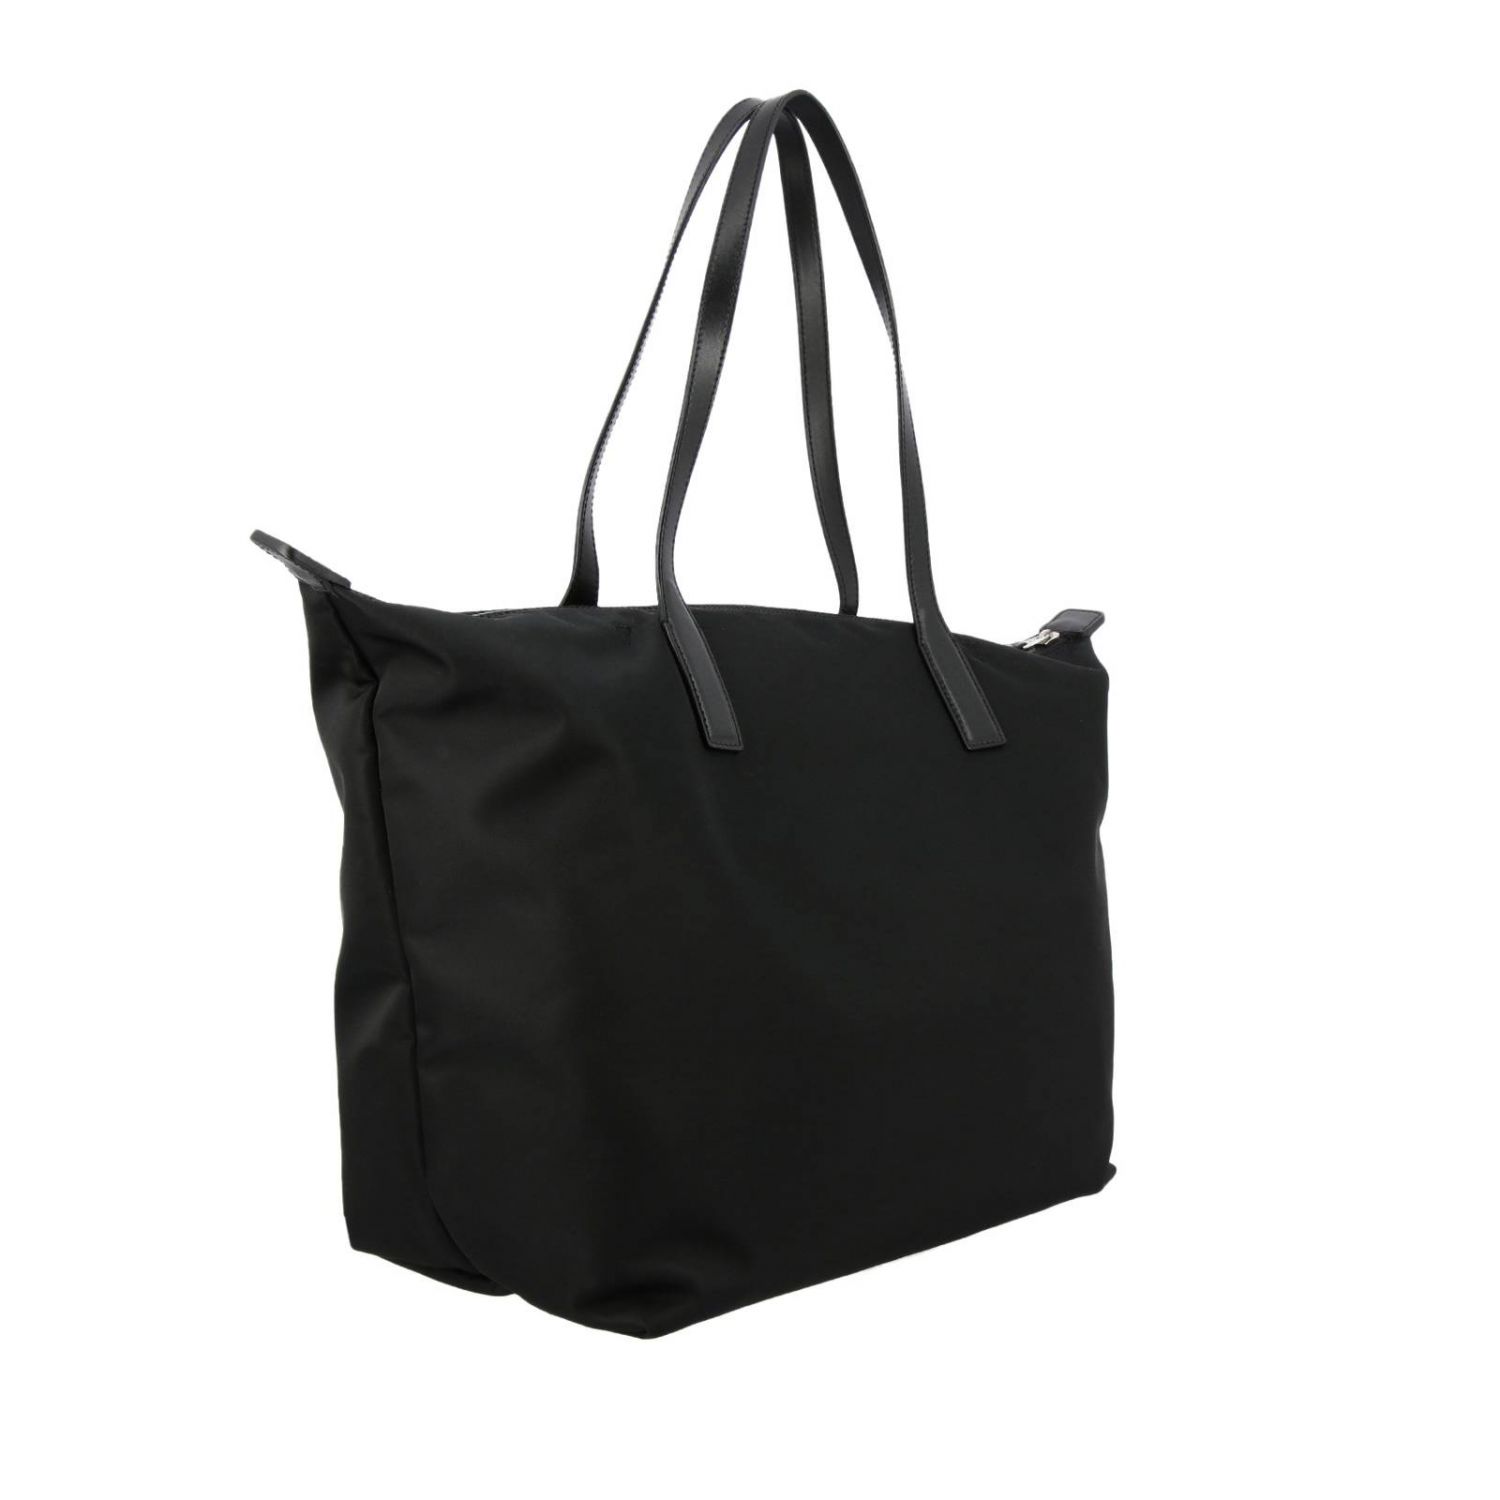 Hogan Outlet: Shoulder bag women | Shoulder Bag Hogan Women Black ...